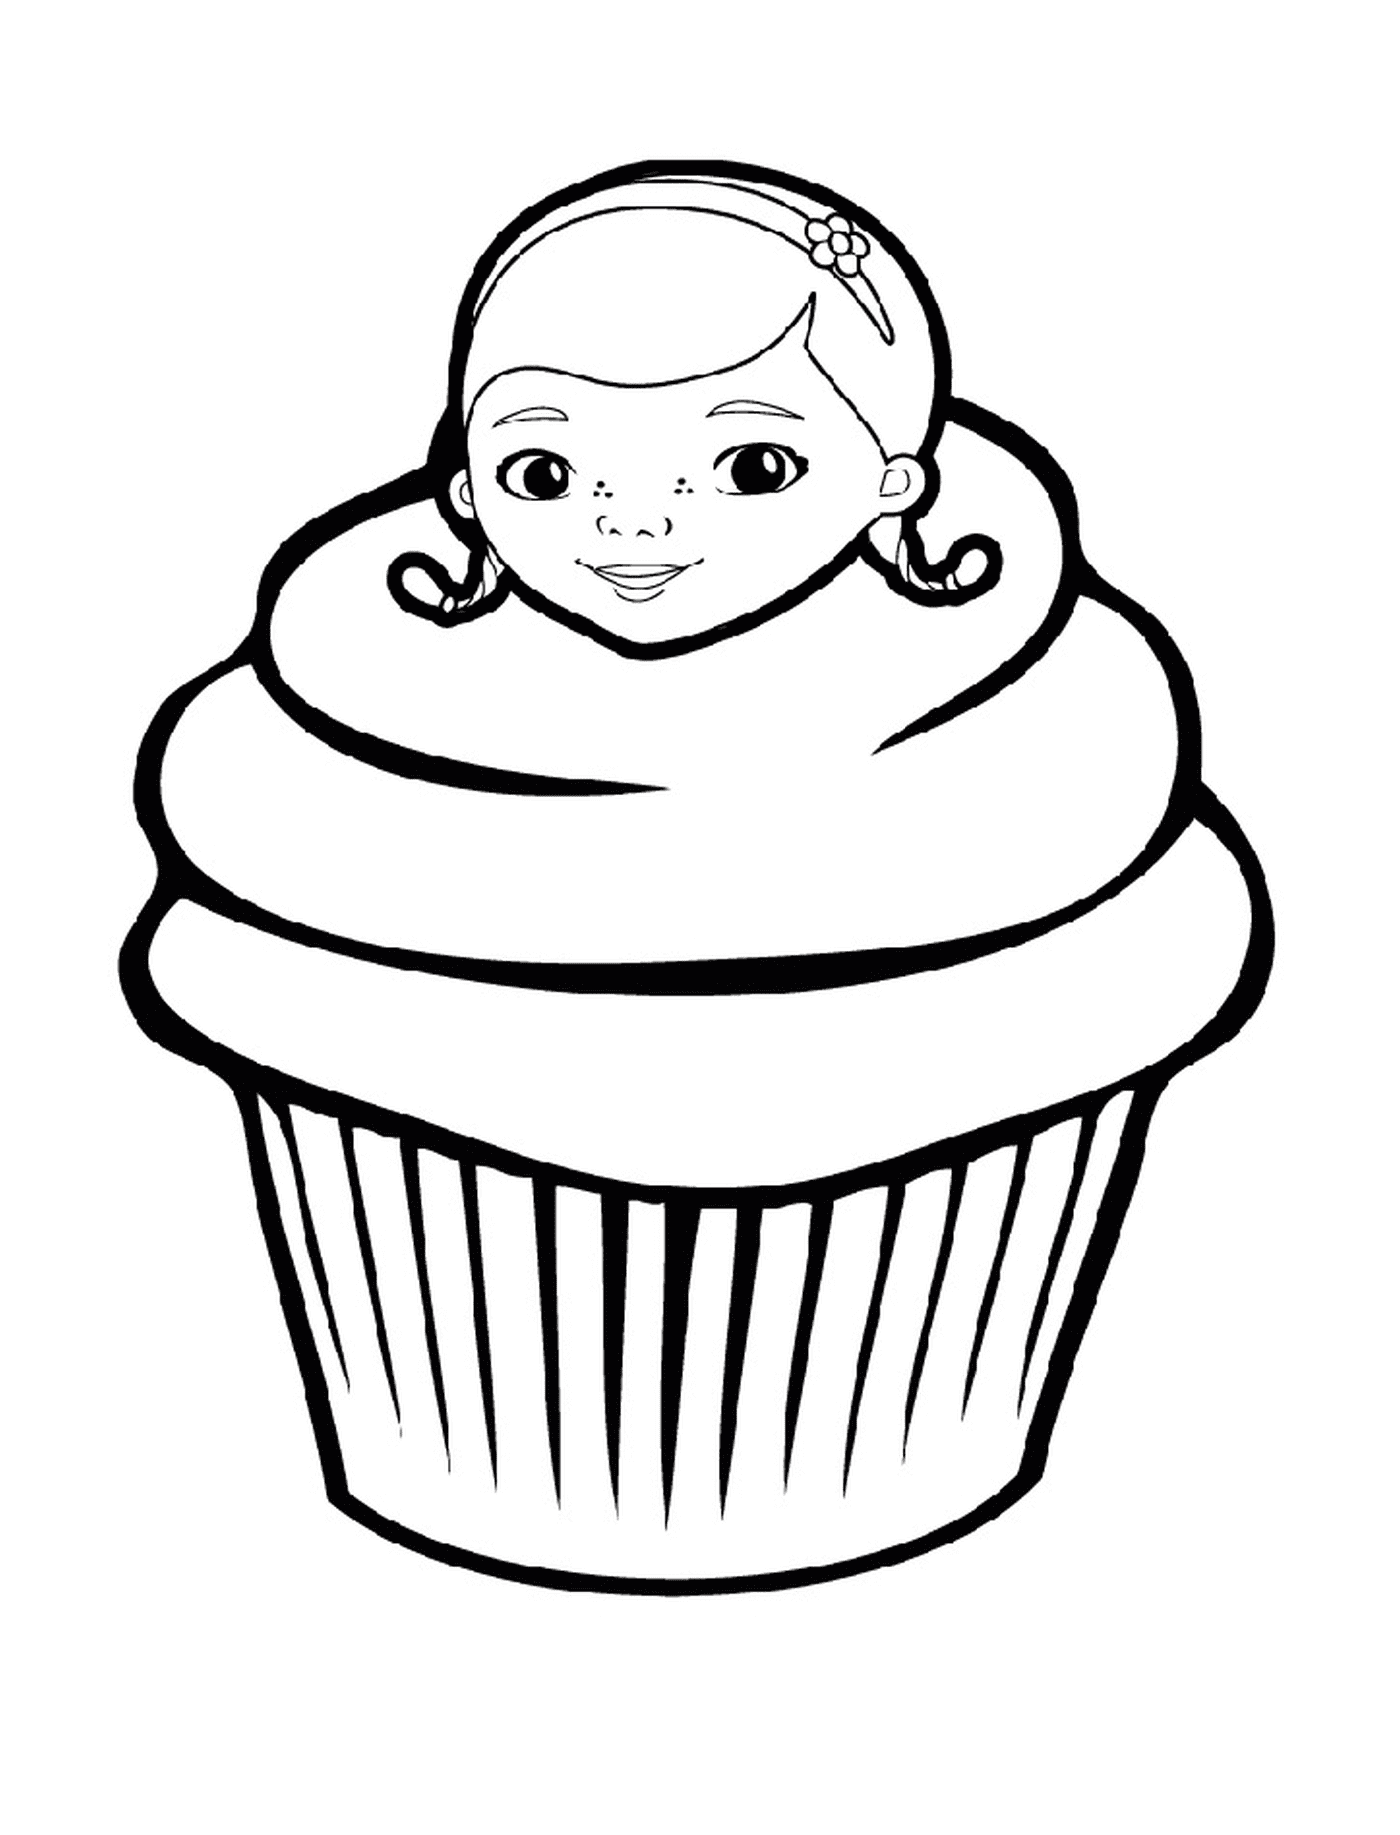   Un cupcake de Doc McStuffins, avec le visage d'une femme 